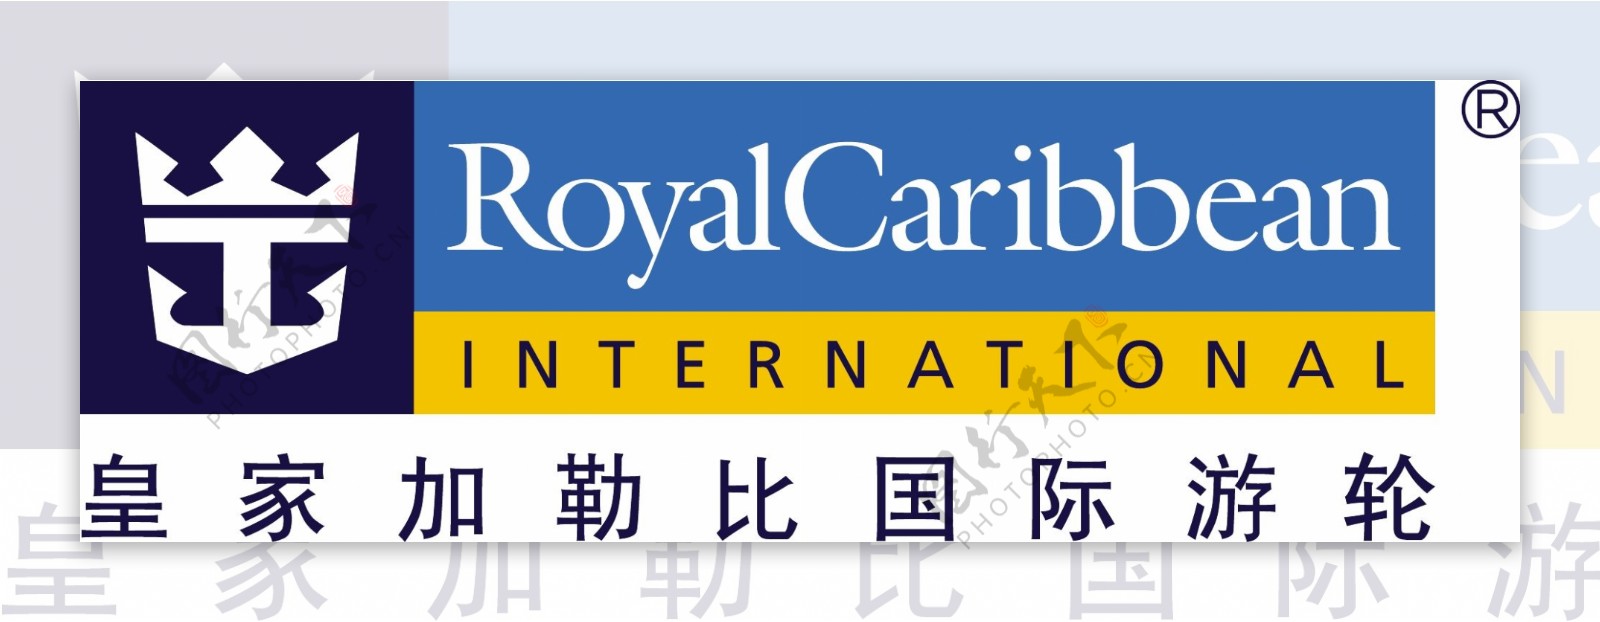 皇家加勒比国际游轮logo图片